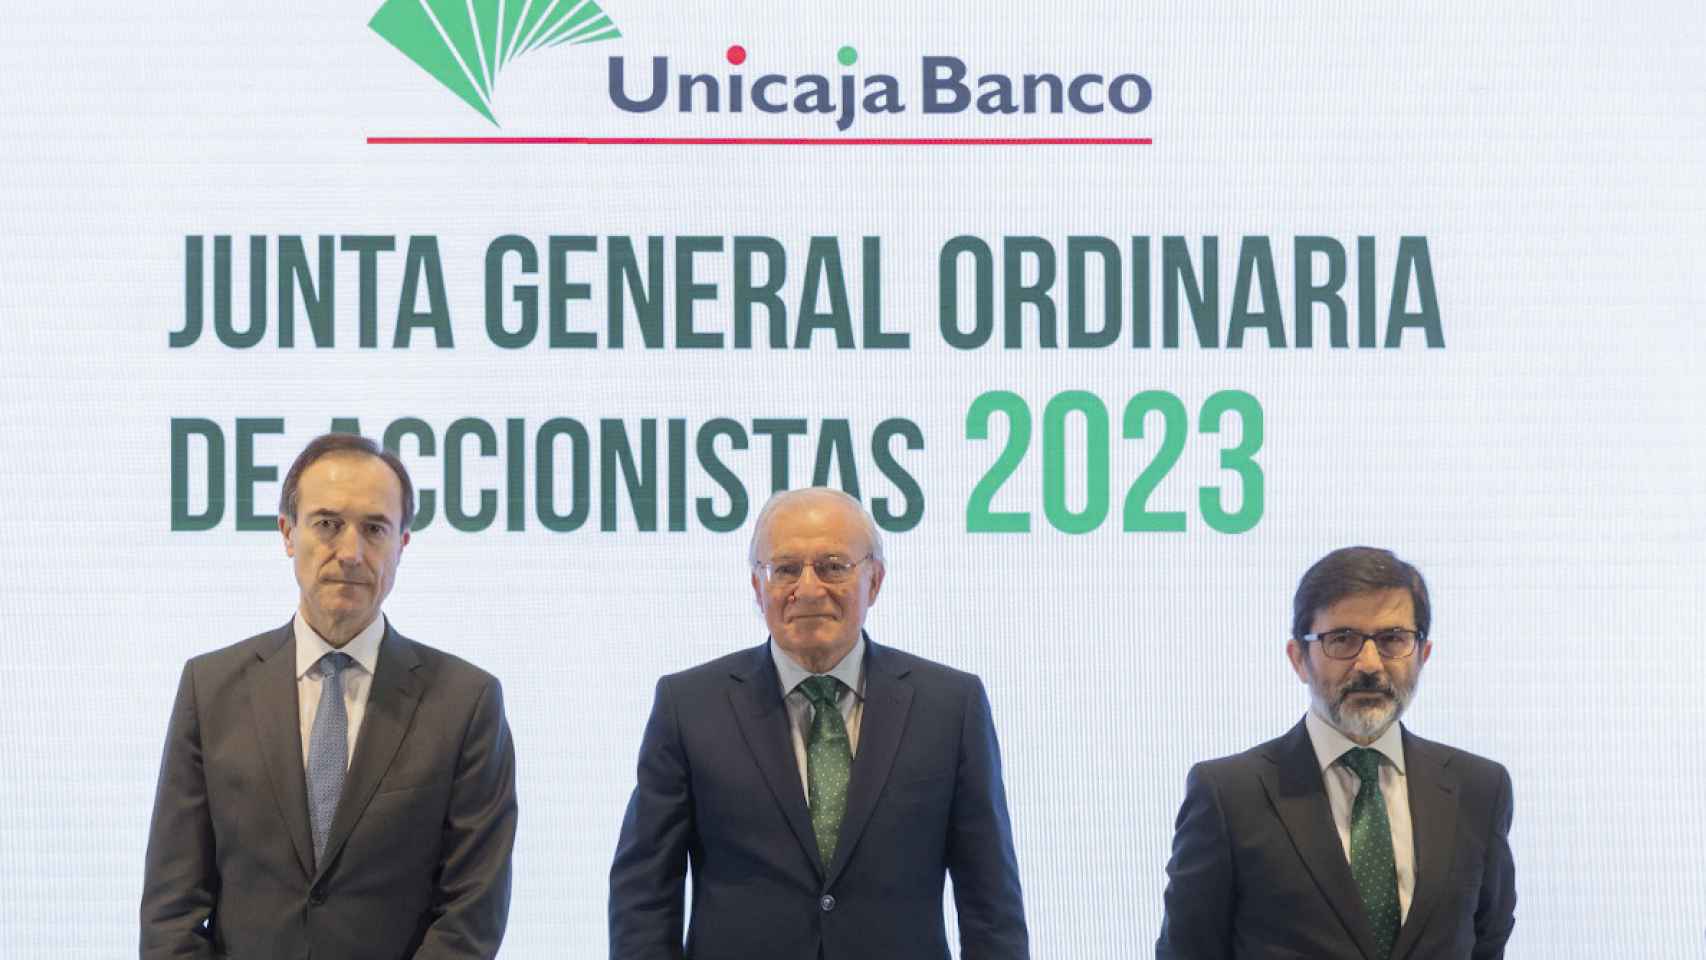 Manuel Menéndez, Consejero Delegado de  Unicaja  Banco;  Manuel  Azuaga, Presidente de Unicaja Banco, y Vicente Orti, Vicesecretario no consejero del Consejo de Administración.